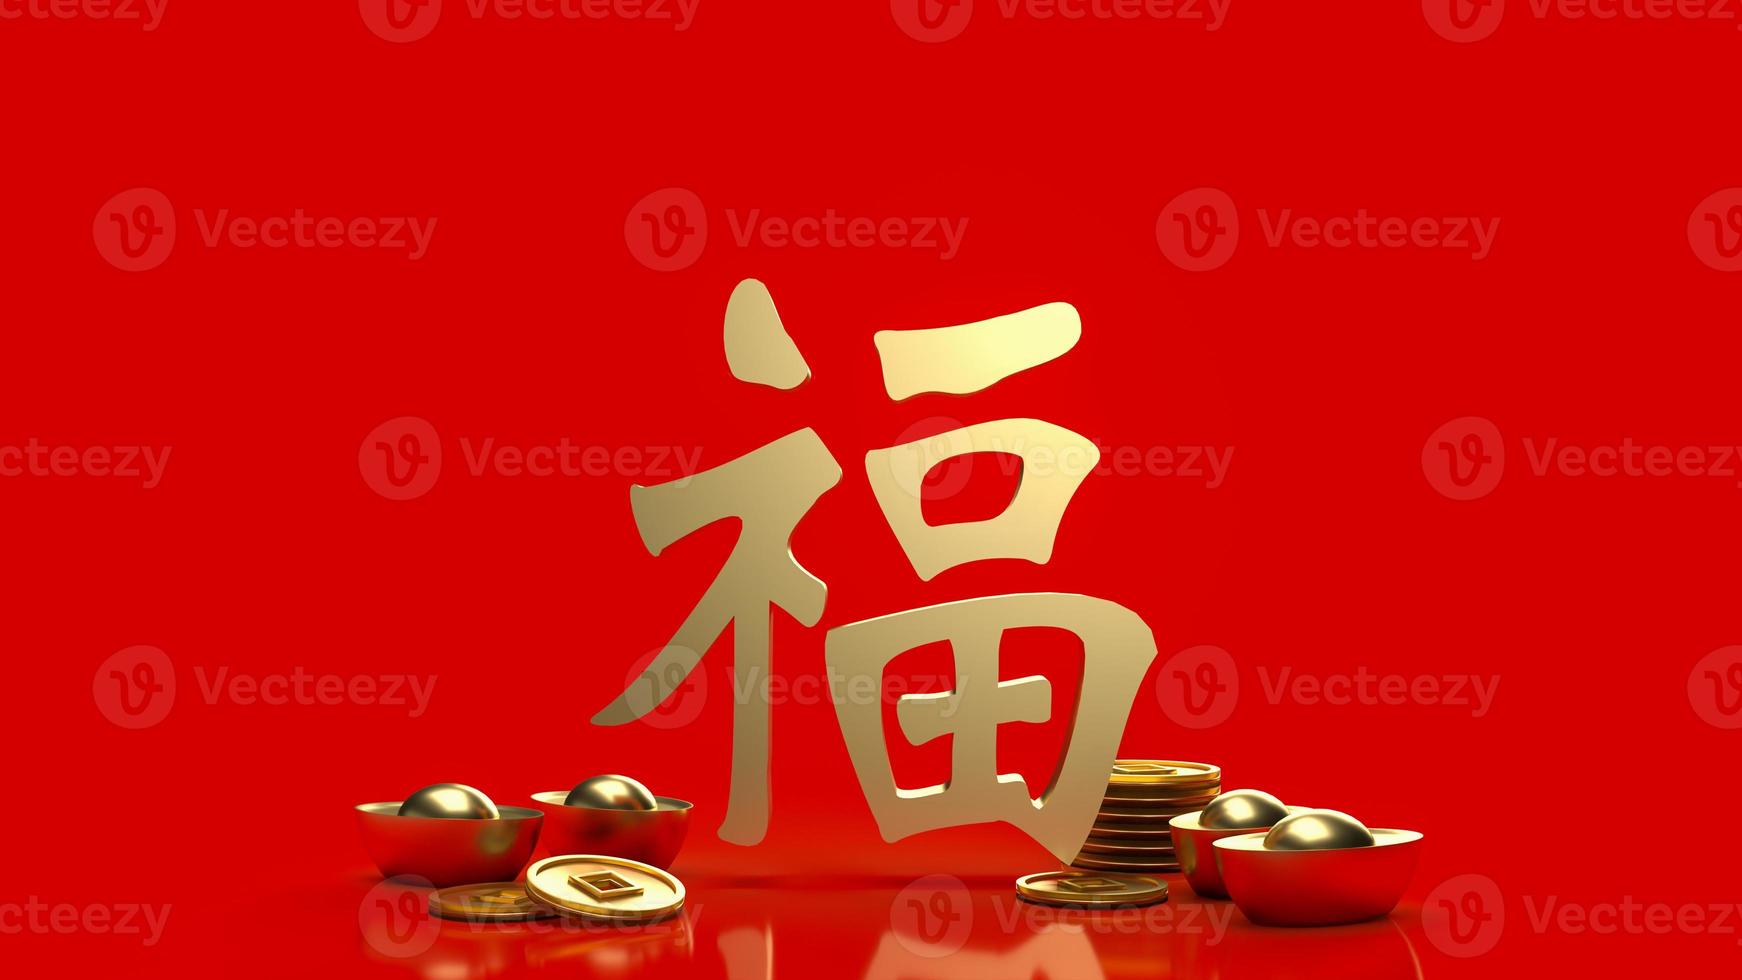 l'argent d'or et la signification du texte chanceux chinois fu est la bonne chance est venue pour la célébration ou le concept du nouvel an rendu 3d photo